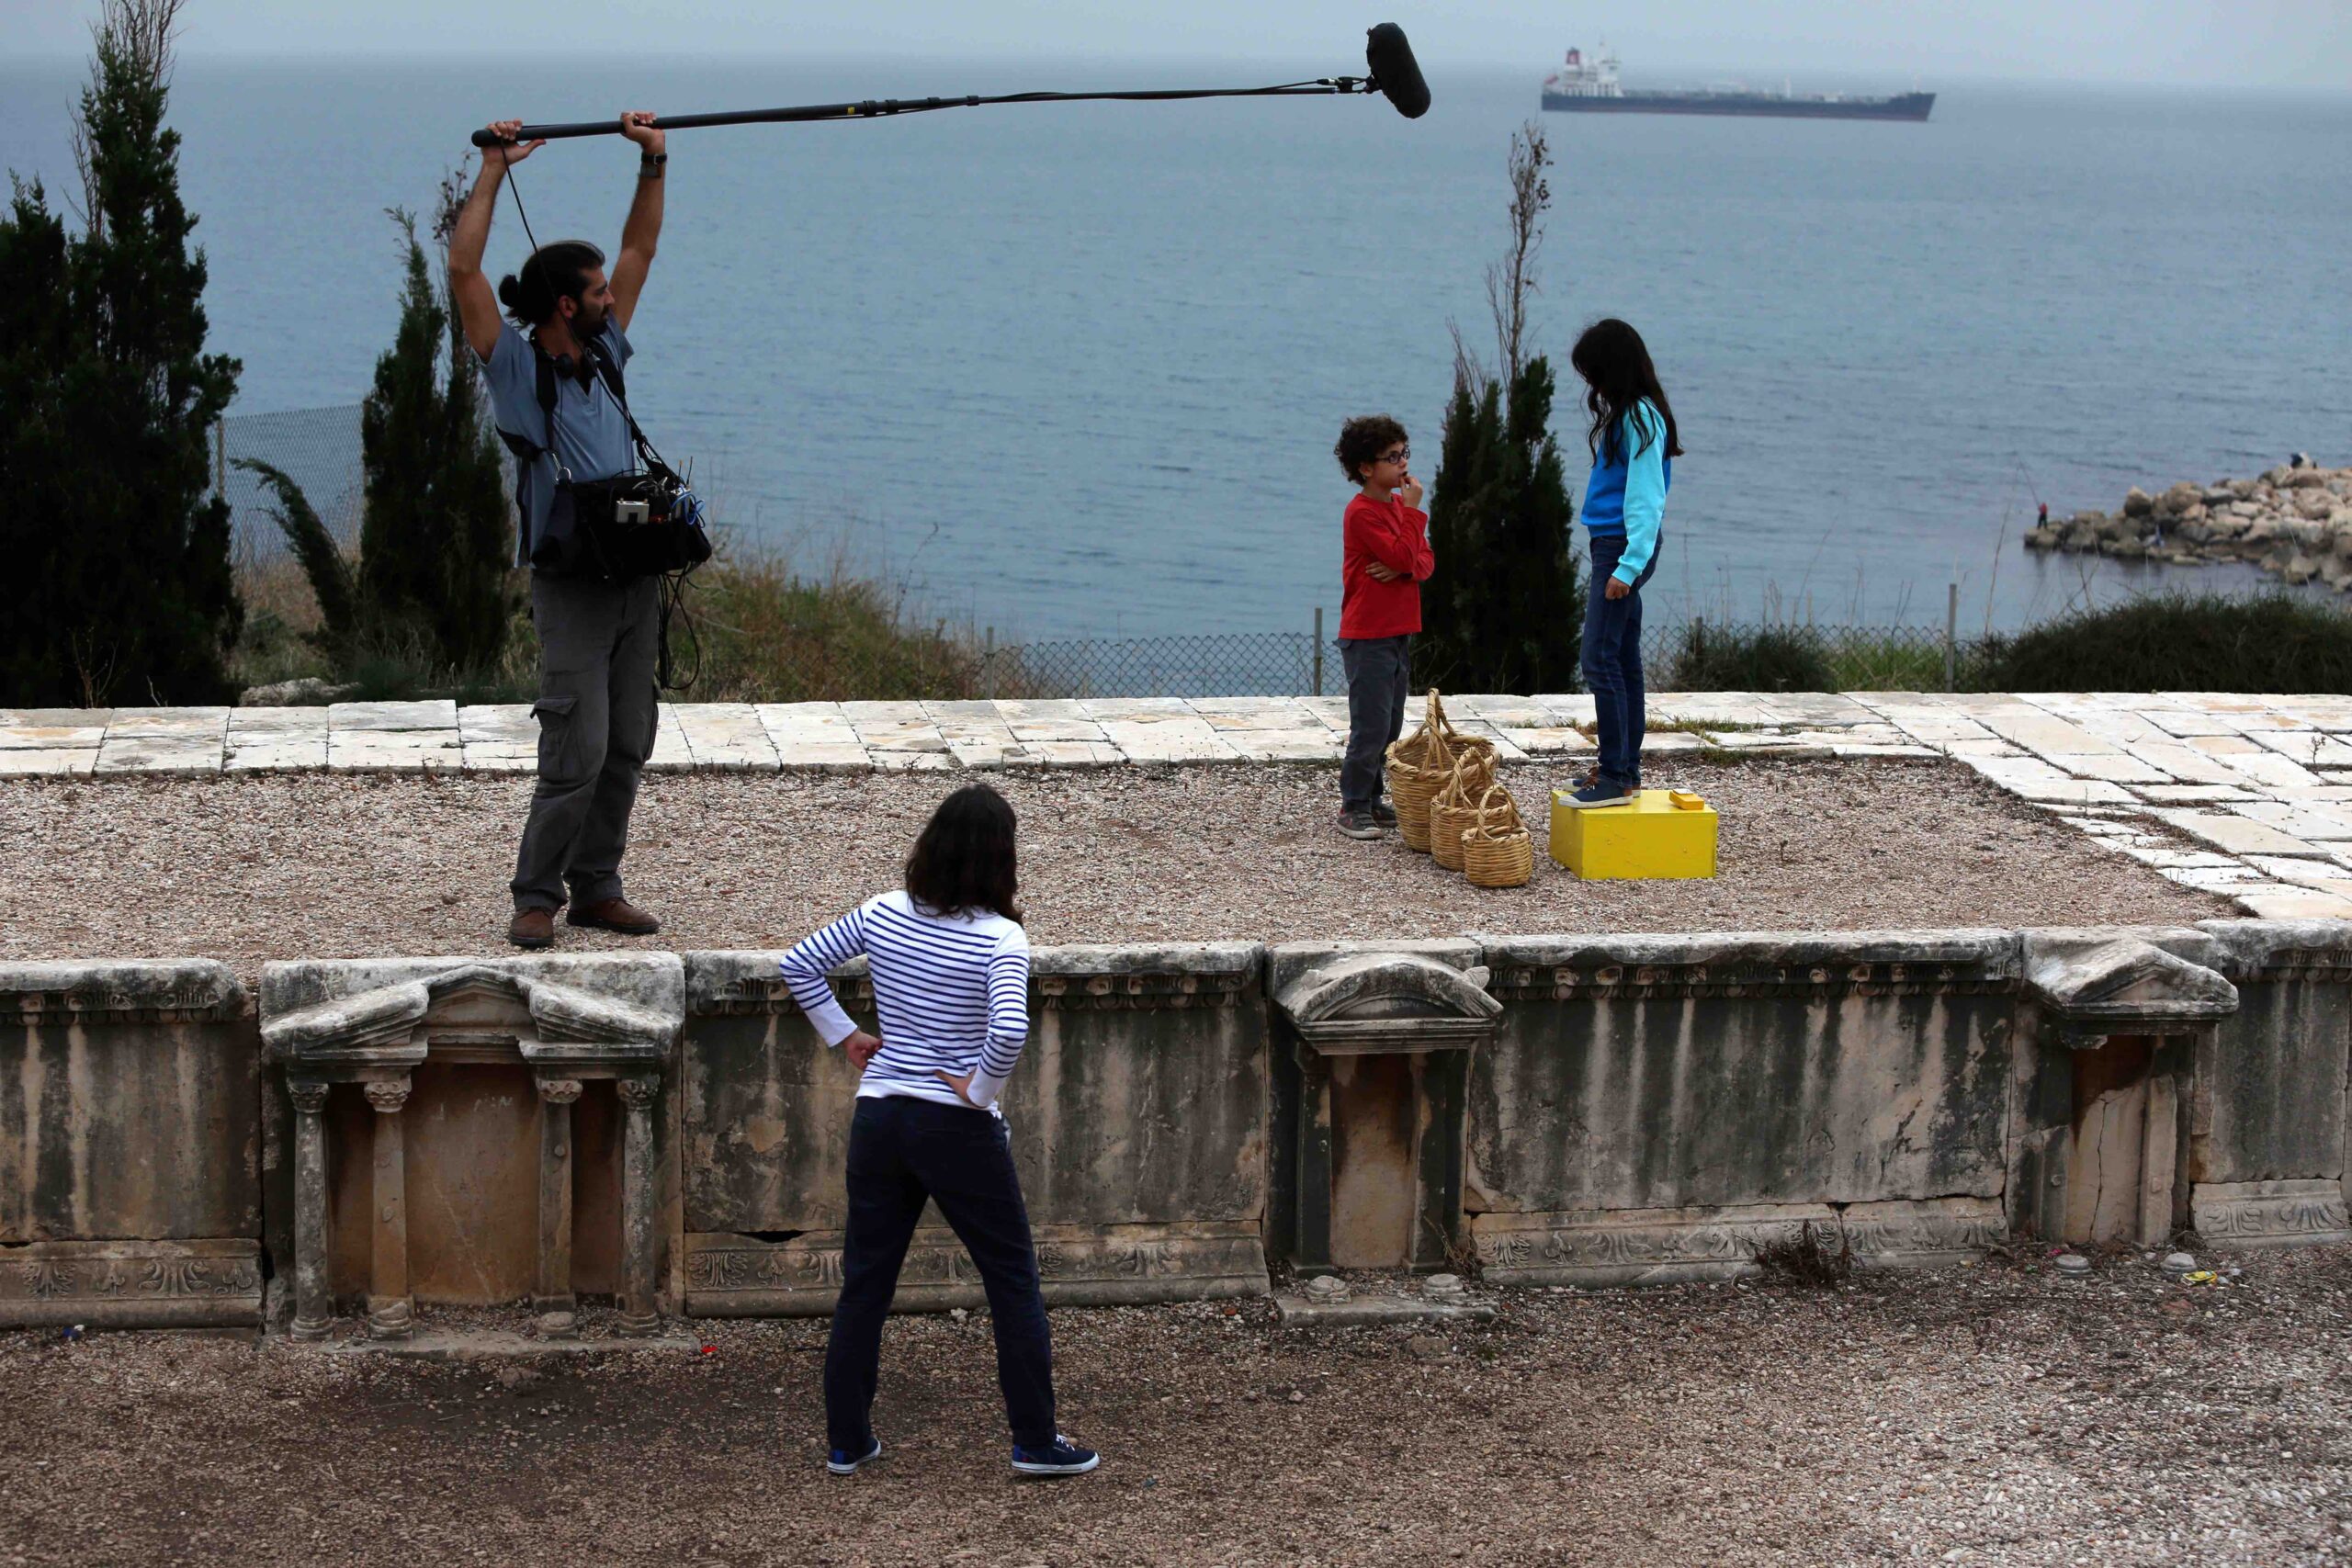 Sarah Hatem artiste franco-libanaise tournage dans le théâtre romain de Byblos ruines rituel<br />
french-lebanese artist shooting at Byblos roman theatre